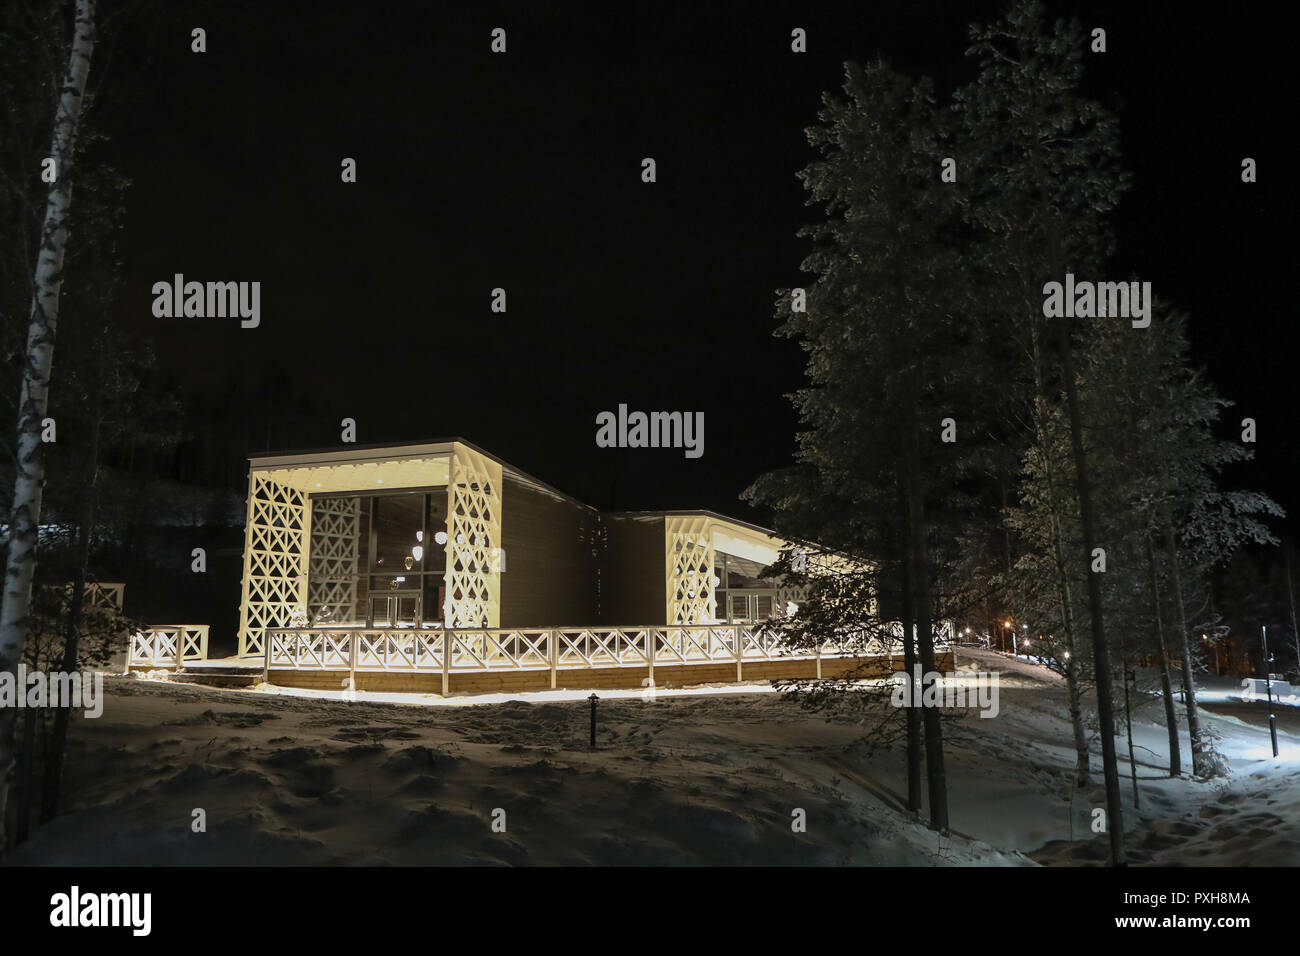 Una vista generale dell'Artic Treehouse hotel in Rovaniemi, Finlandia. Rovaniemi è il capoluogo della Lapponia finlandese ed è situato a nord del Circolo Polare Artico, è anche la città natale di ufficiale di Santa Claus. Foto Stock